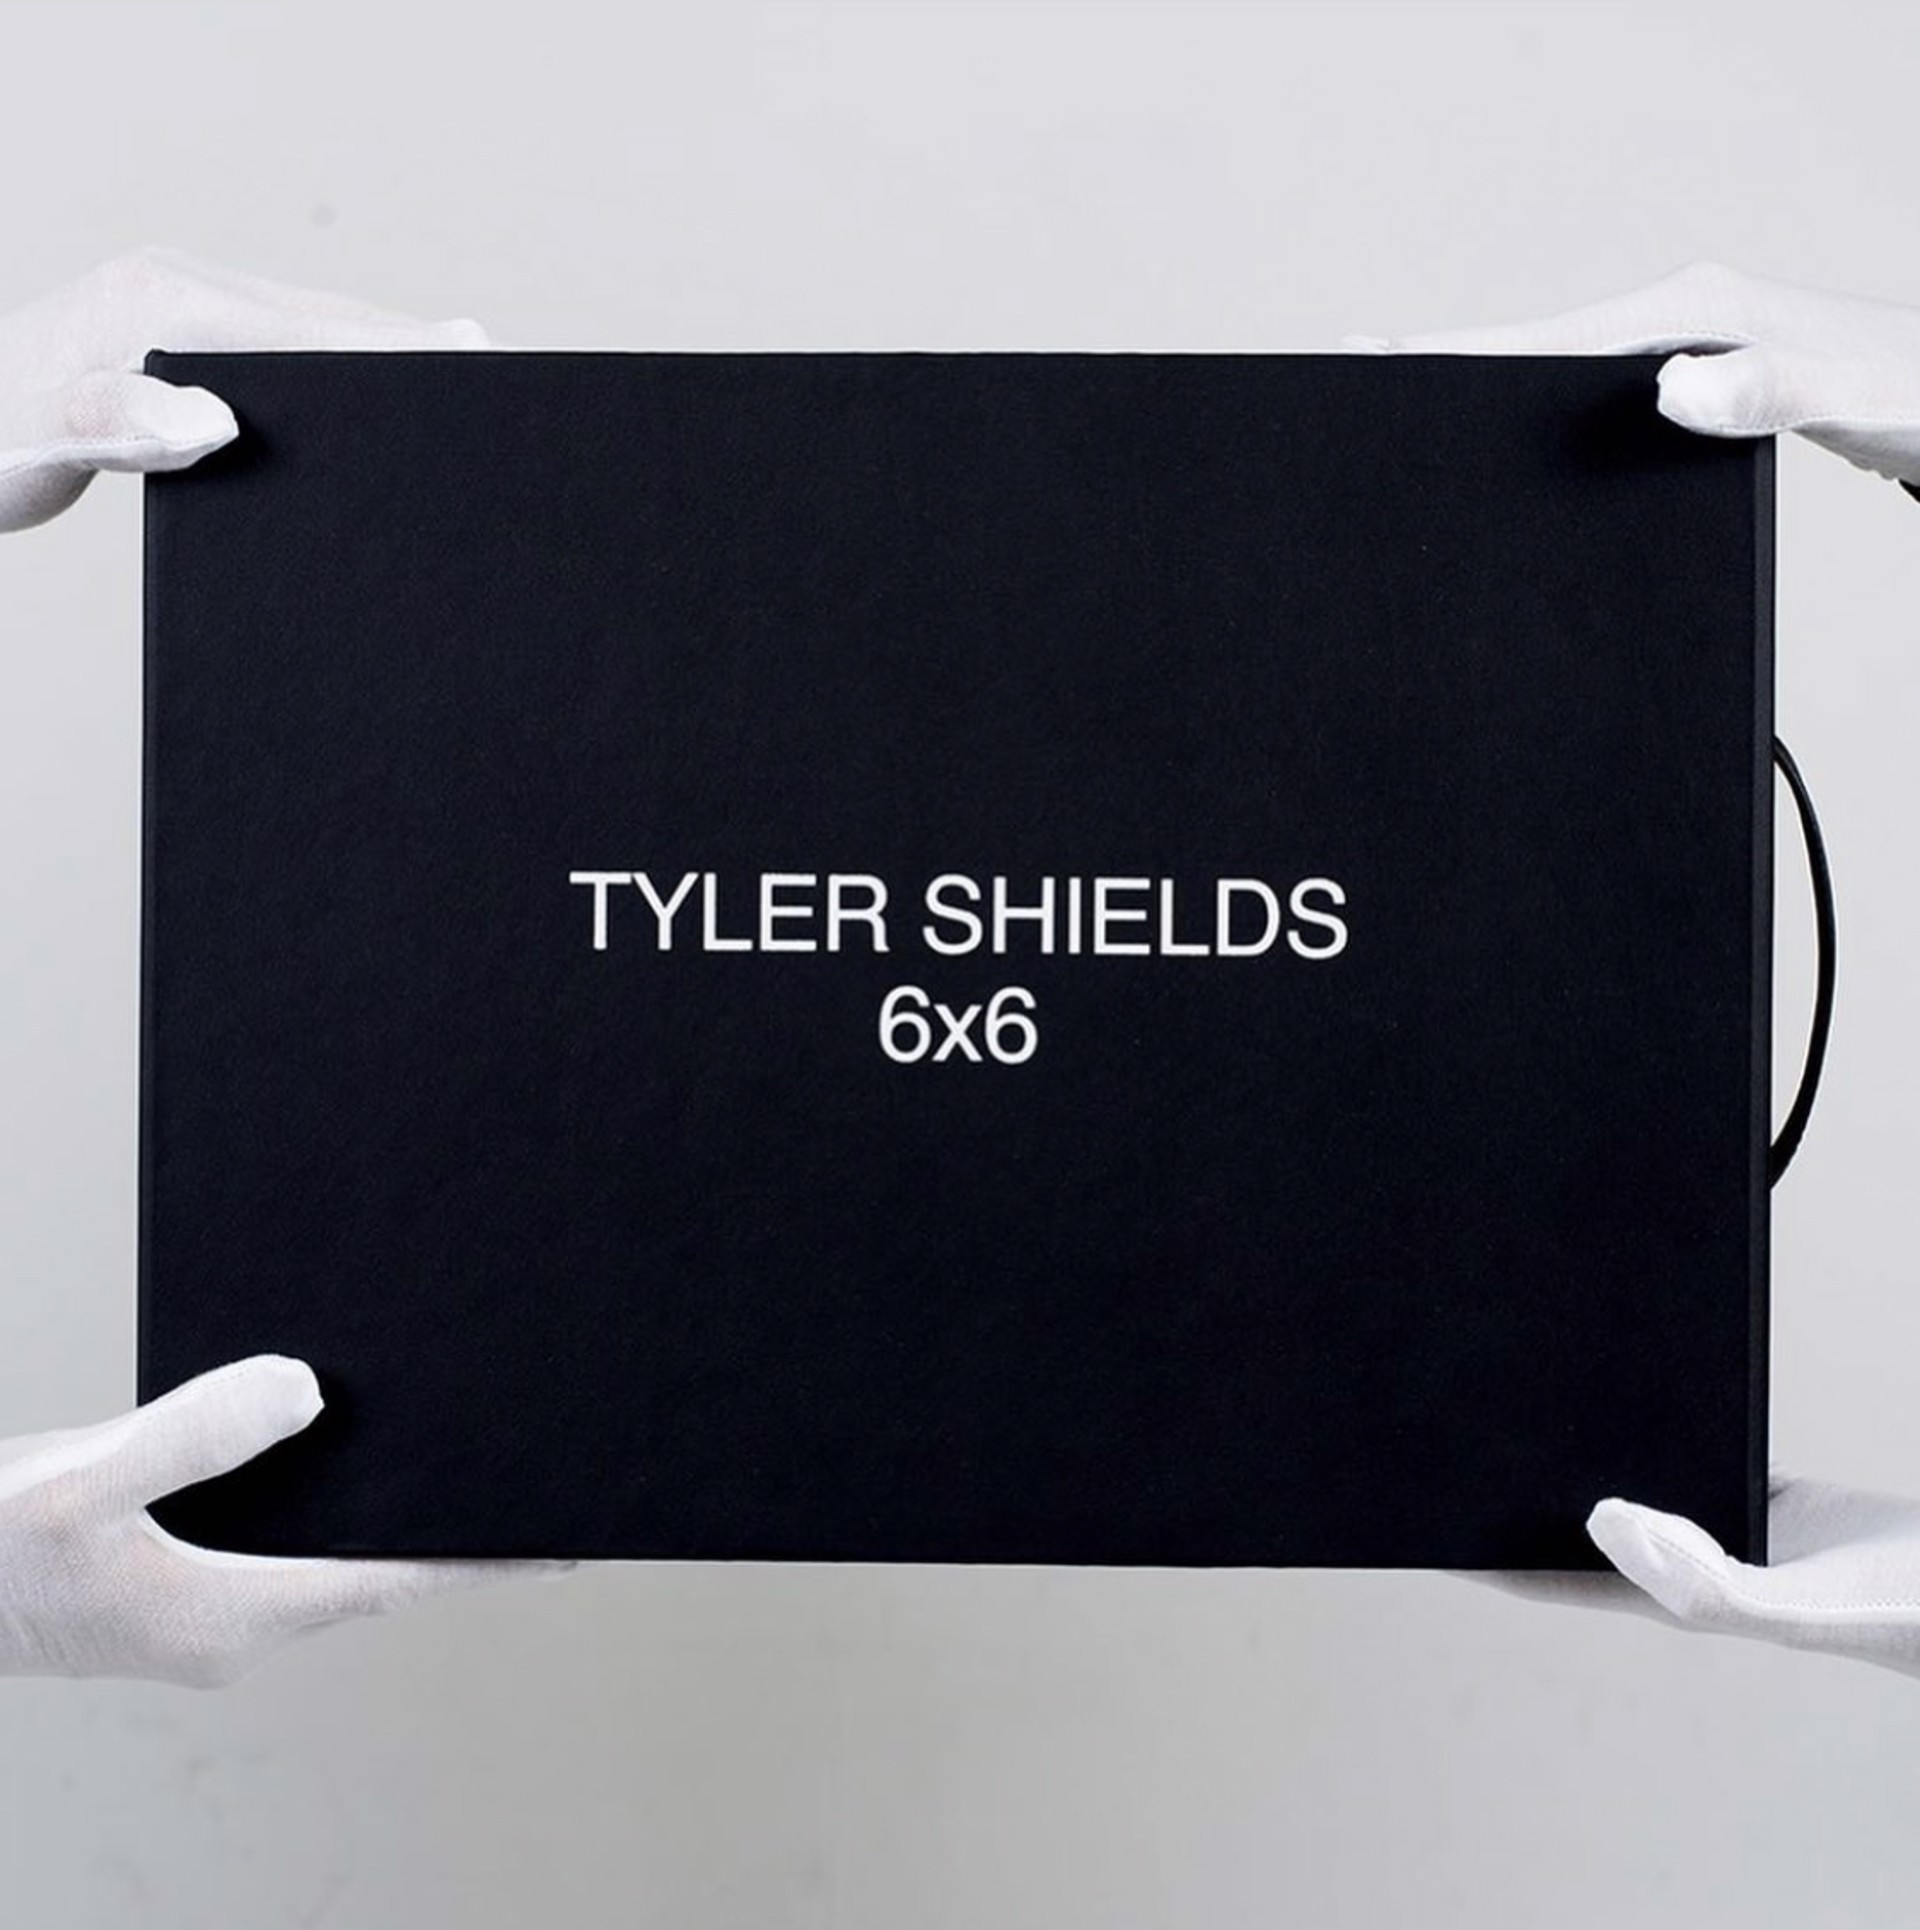 6x6 Portfolio by Tyler Shields